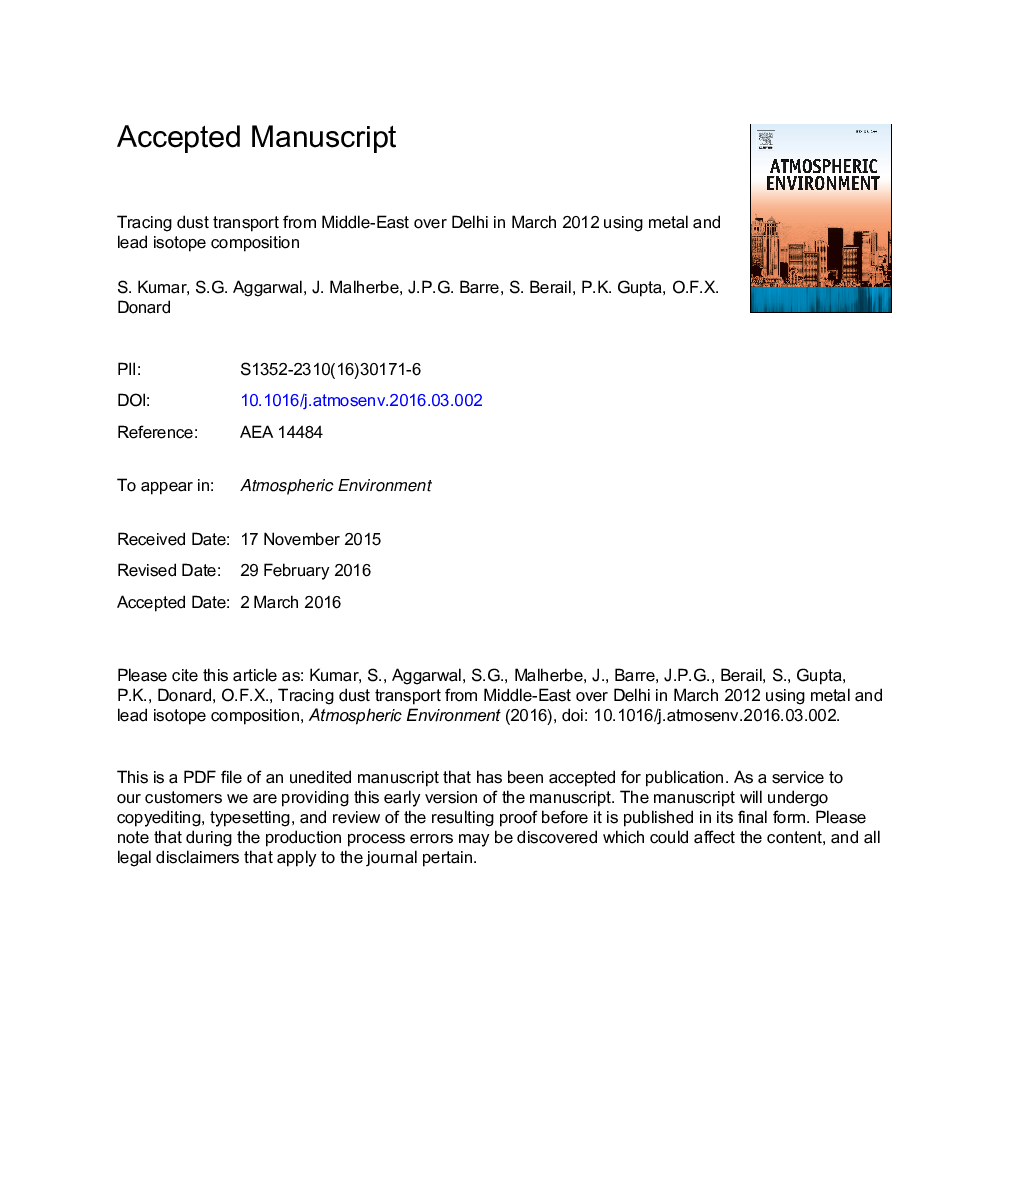 ردیابی حمل و نقل گرد و غبار از خاورمیانه در دهلی در مارس 2012 با استفاده از ترکیبات فلزی و ایزوتوپ سرب 